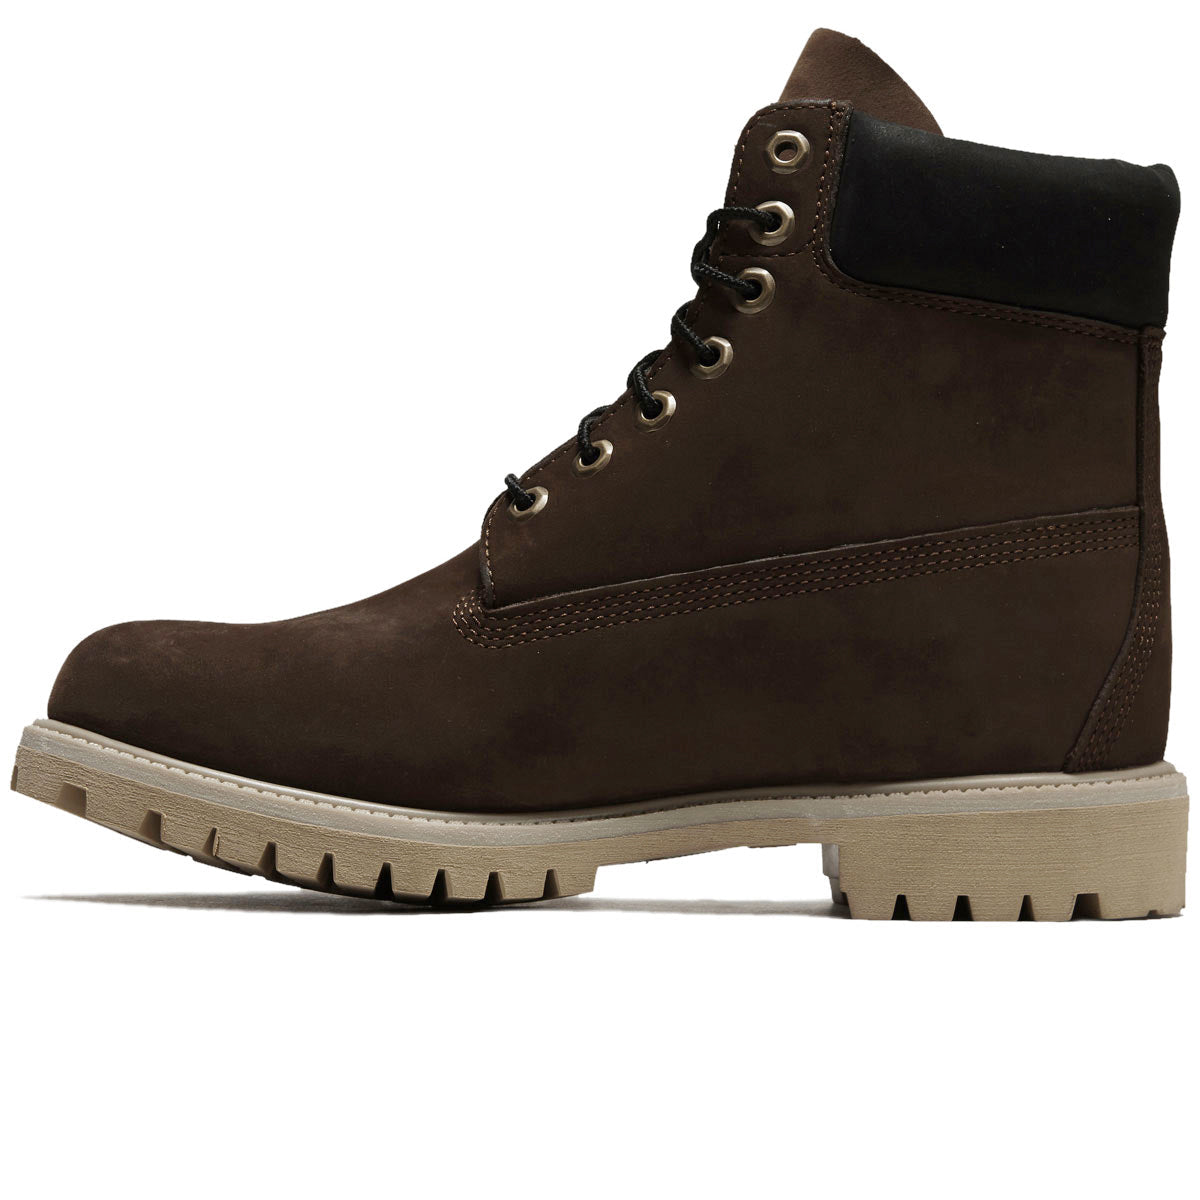 Timberland 6 Inch Premium Boots - Dark Brown Nubuck image 2